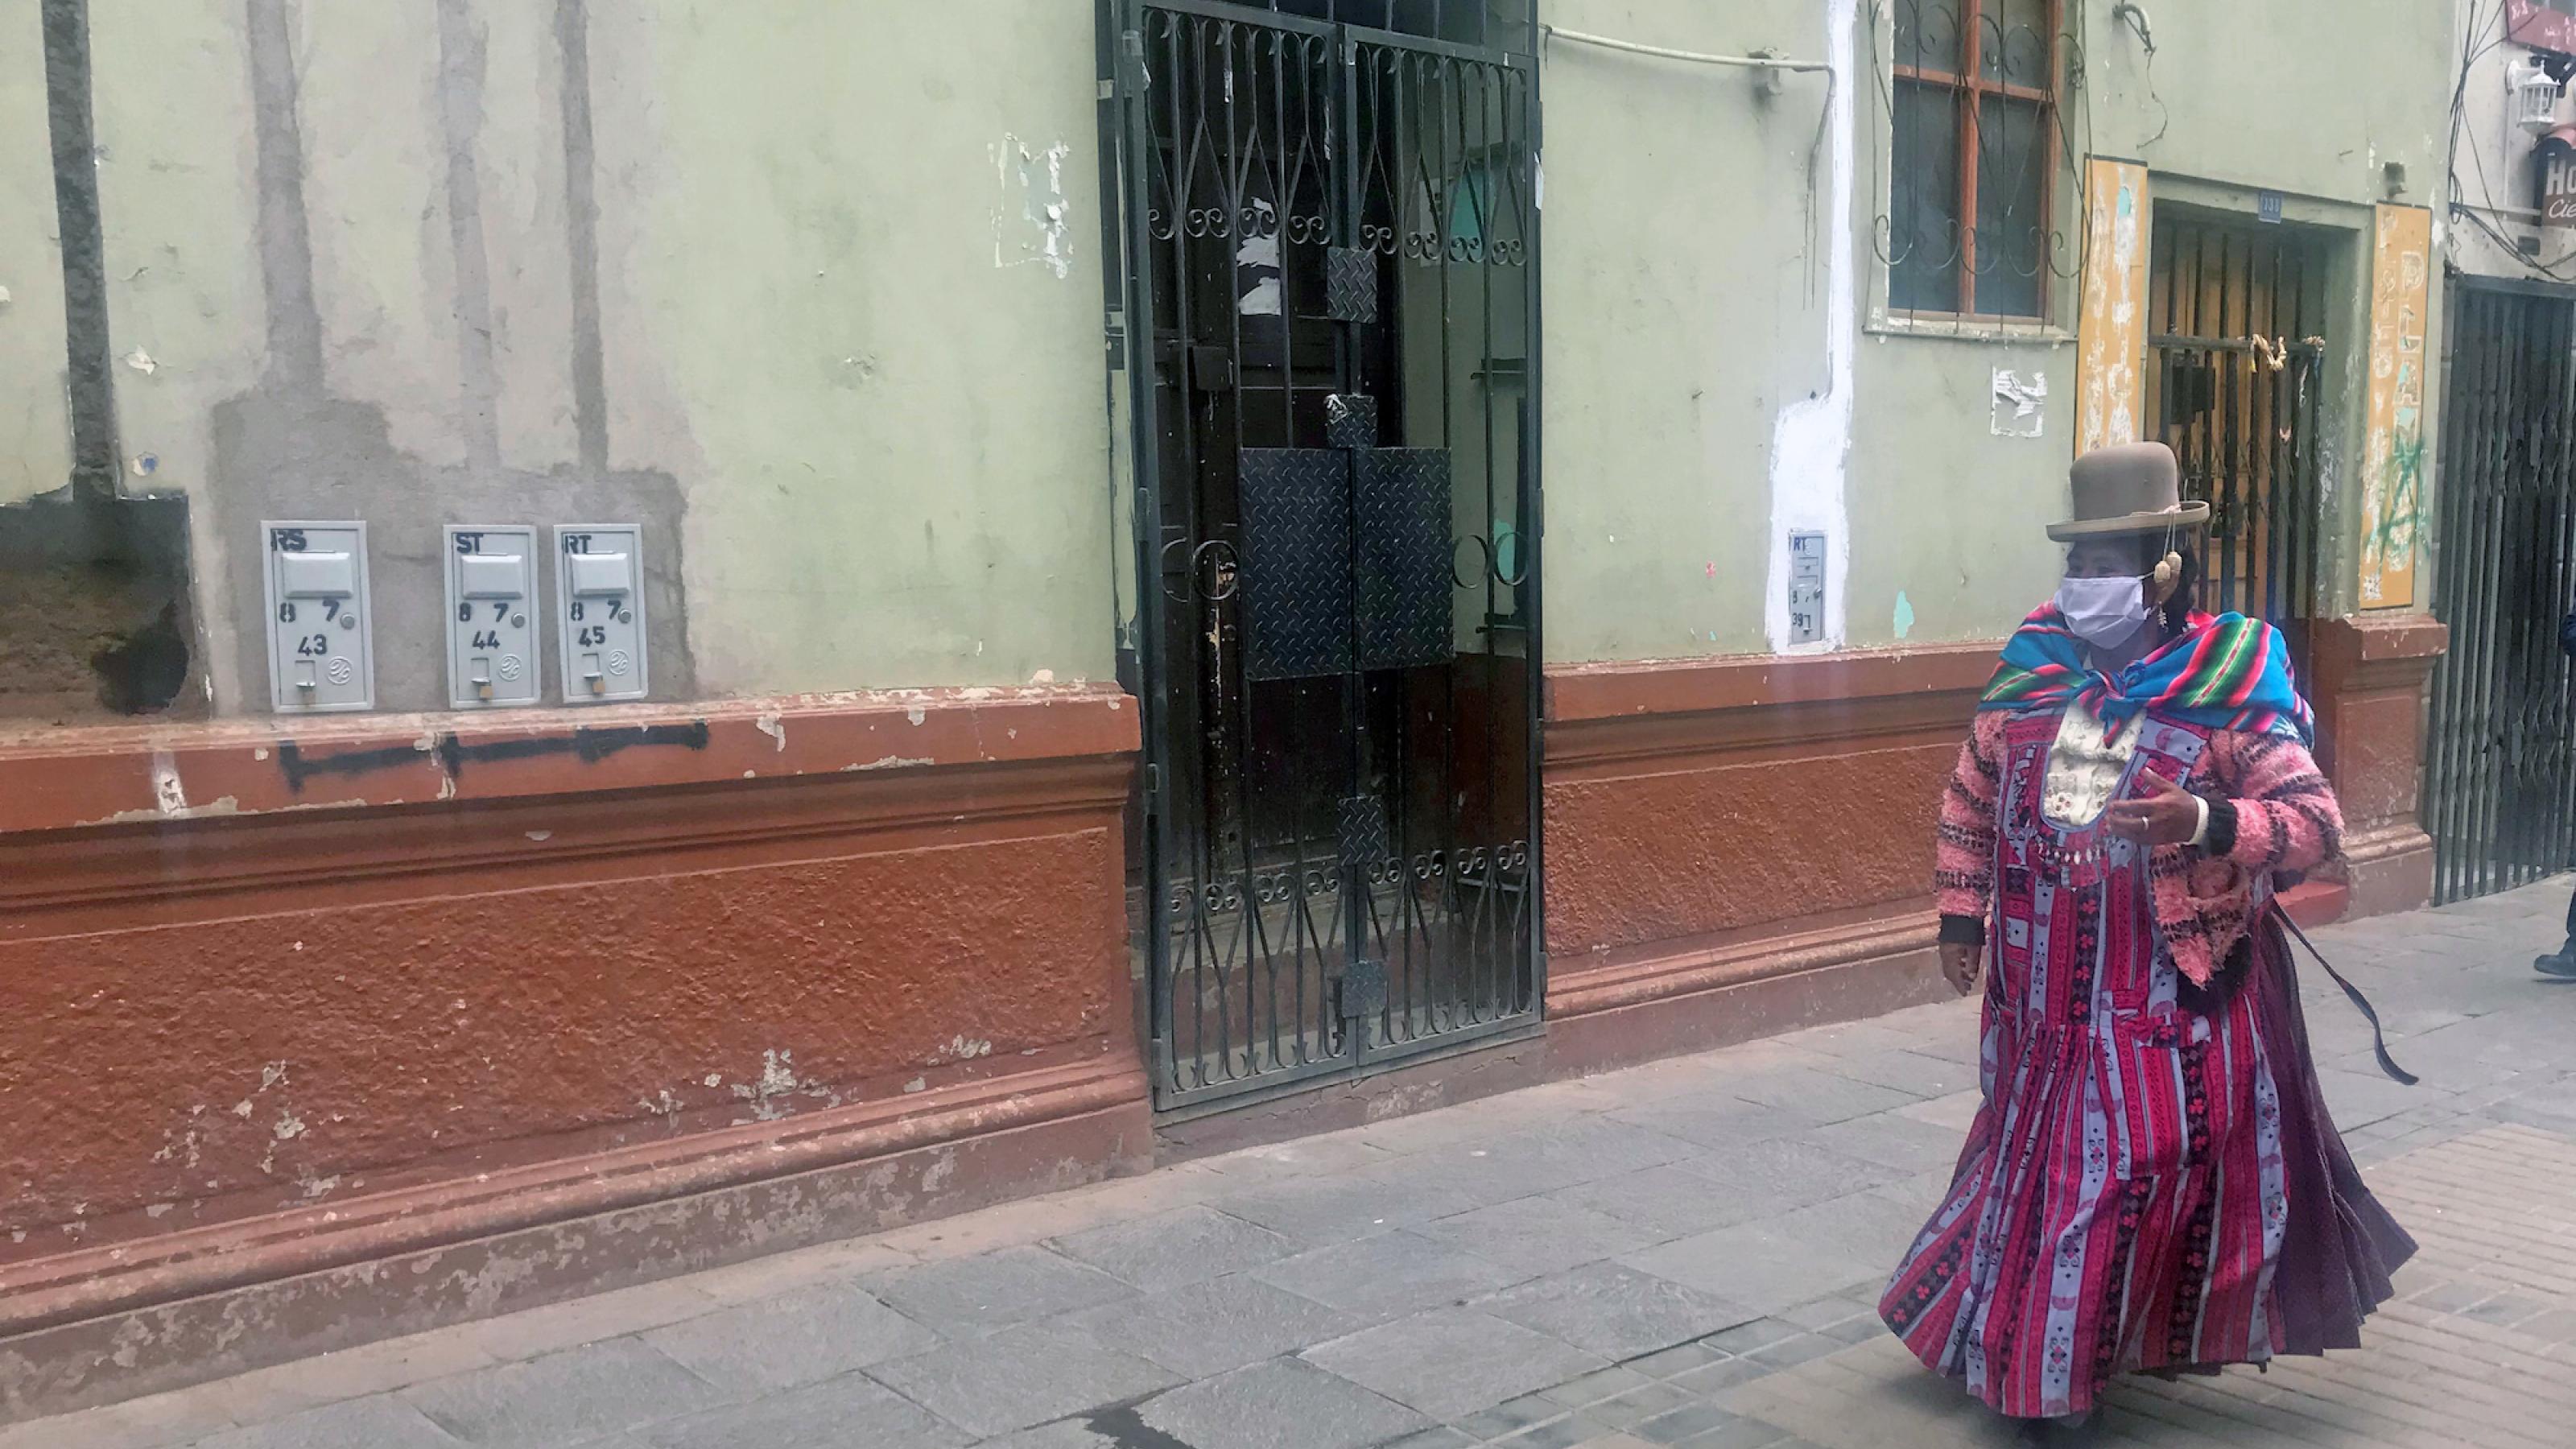 Eine Frau in traditioneller Kleidung geht in Mundschutz auf einer unbelebten Strasse.